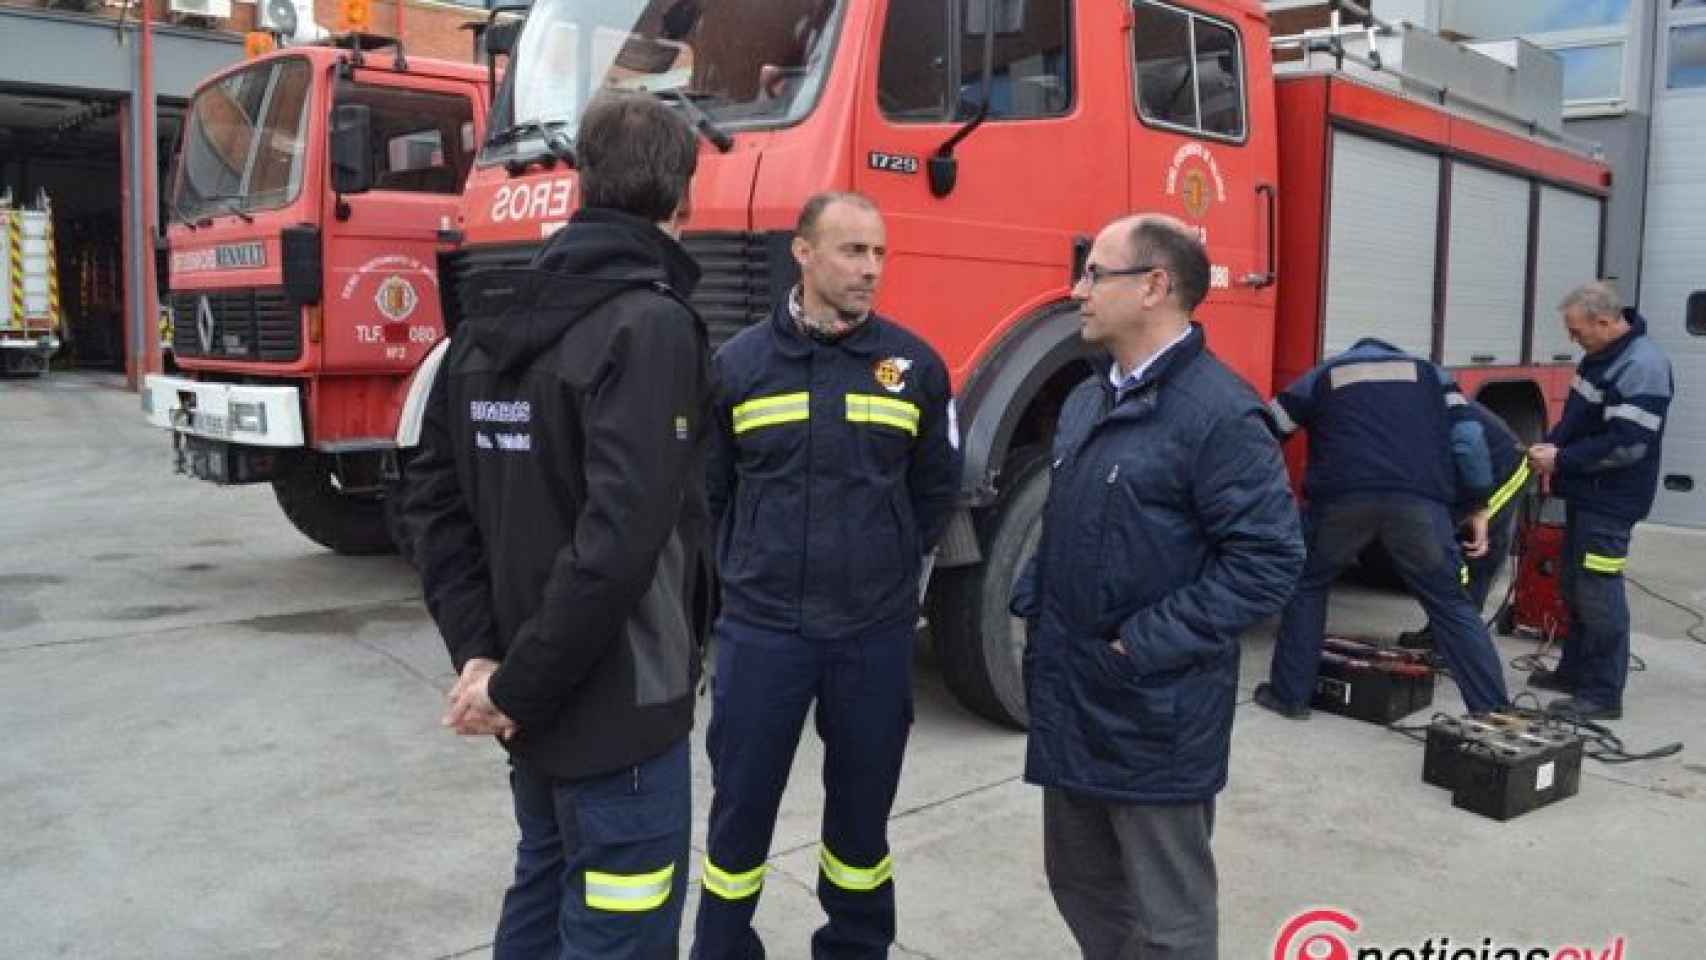 camiones bomberos valladolid sahara 4